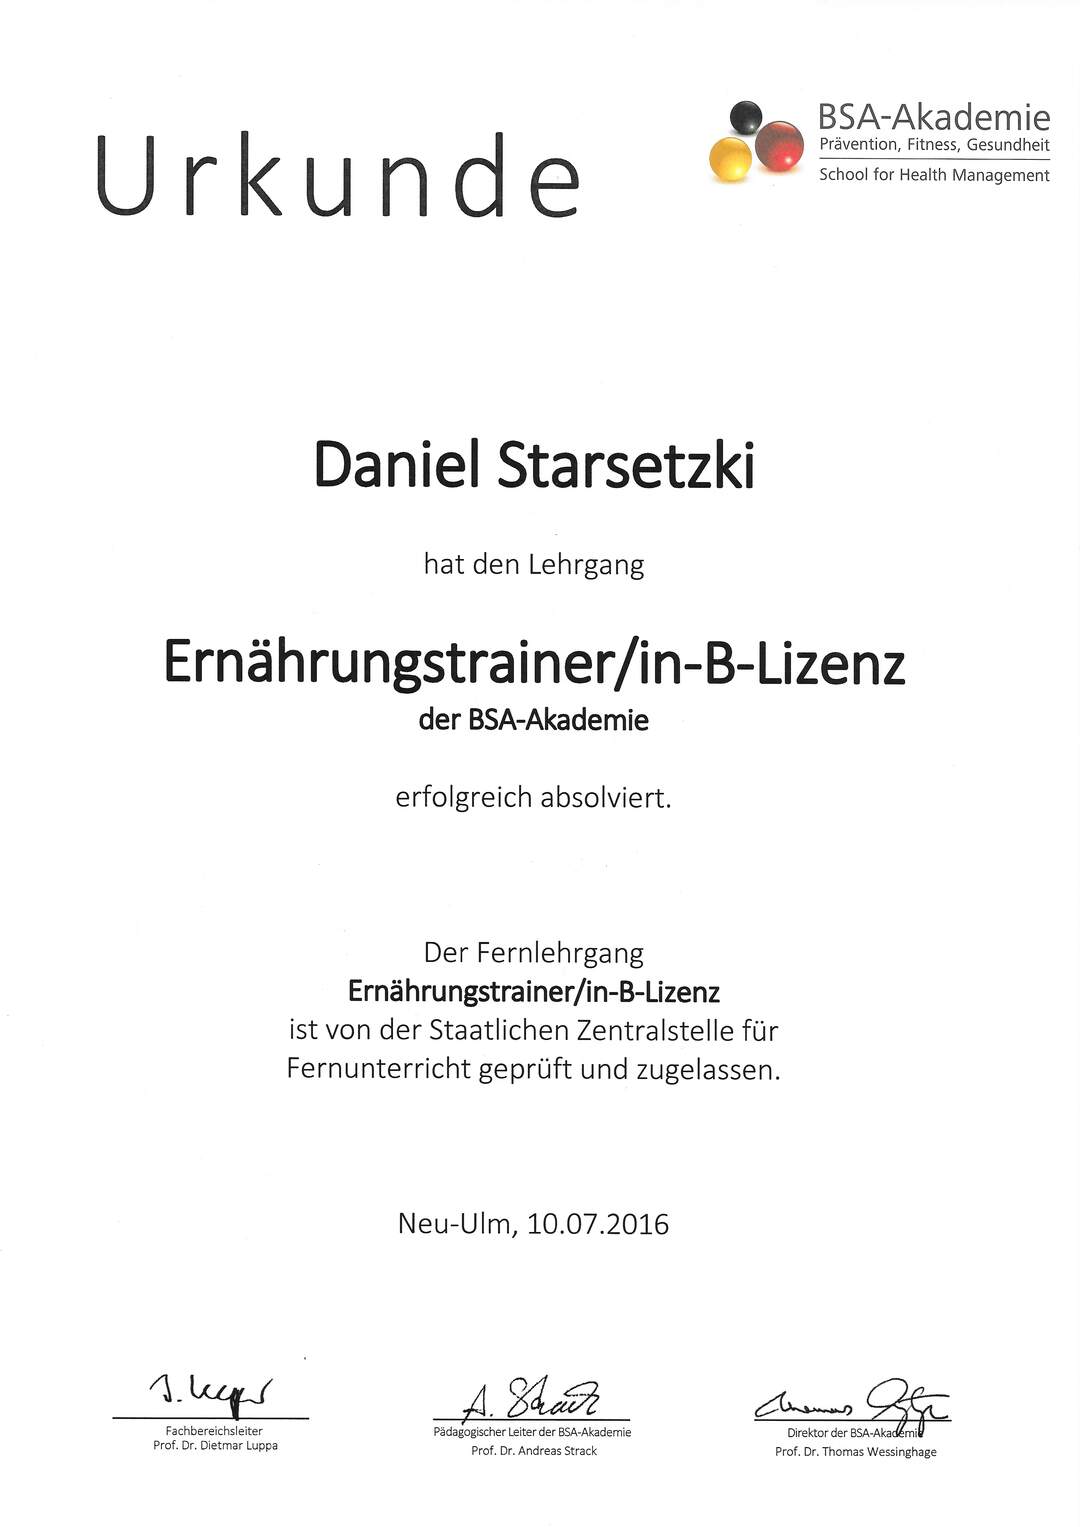 Daniel Starsetzki Ernährungstrainer B-Lizenz Karlsruhe